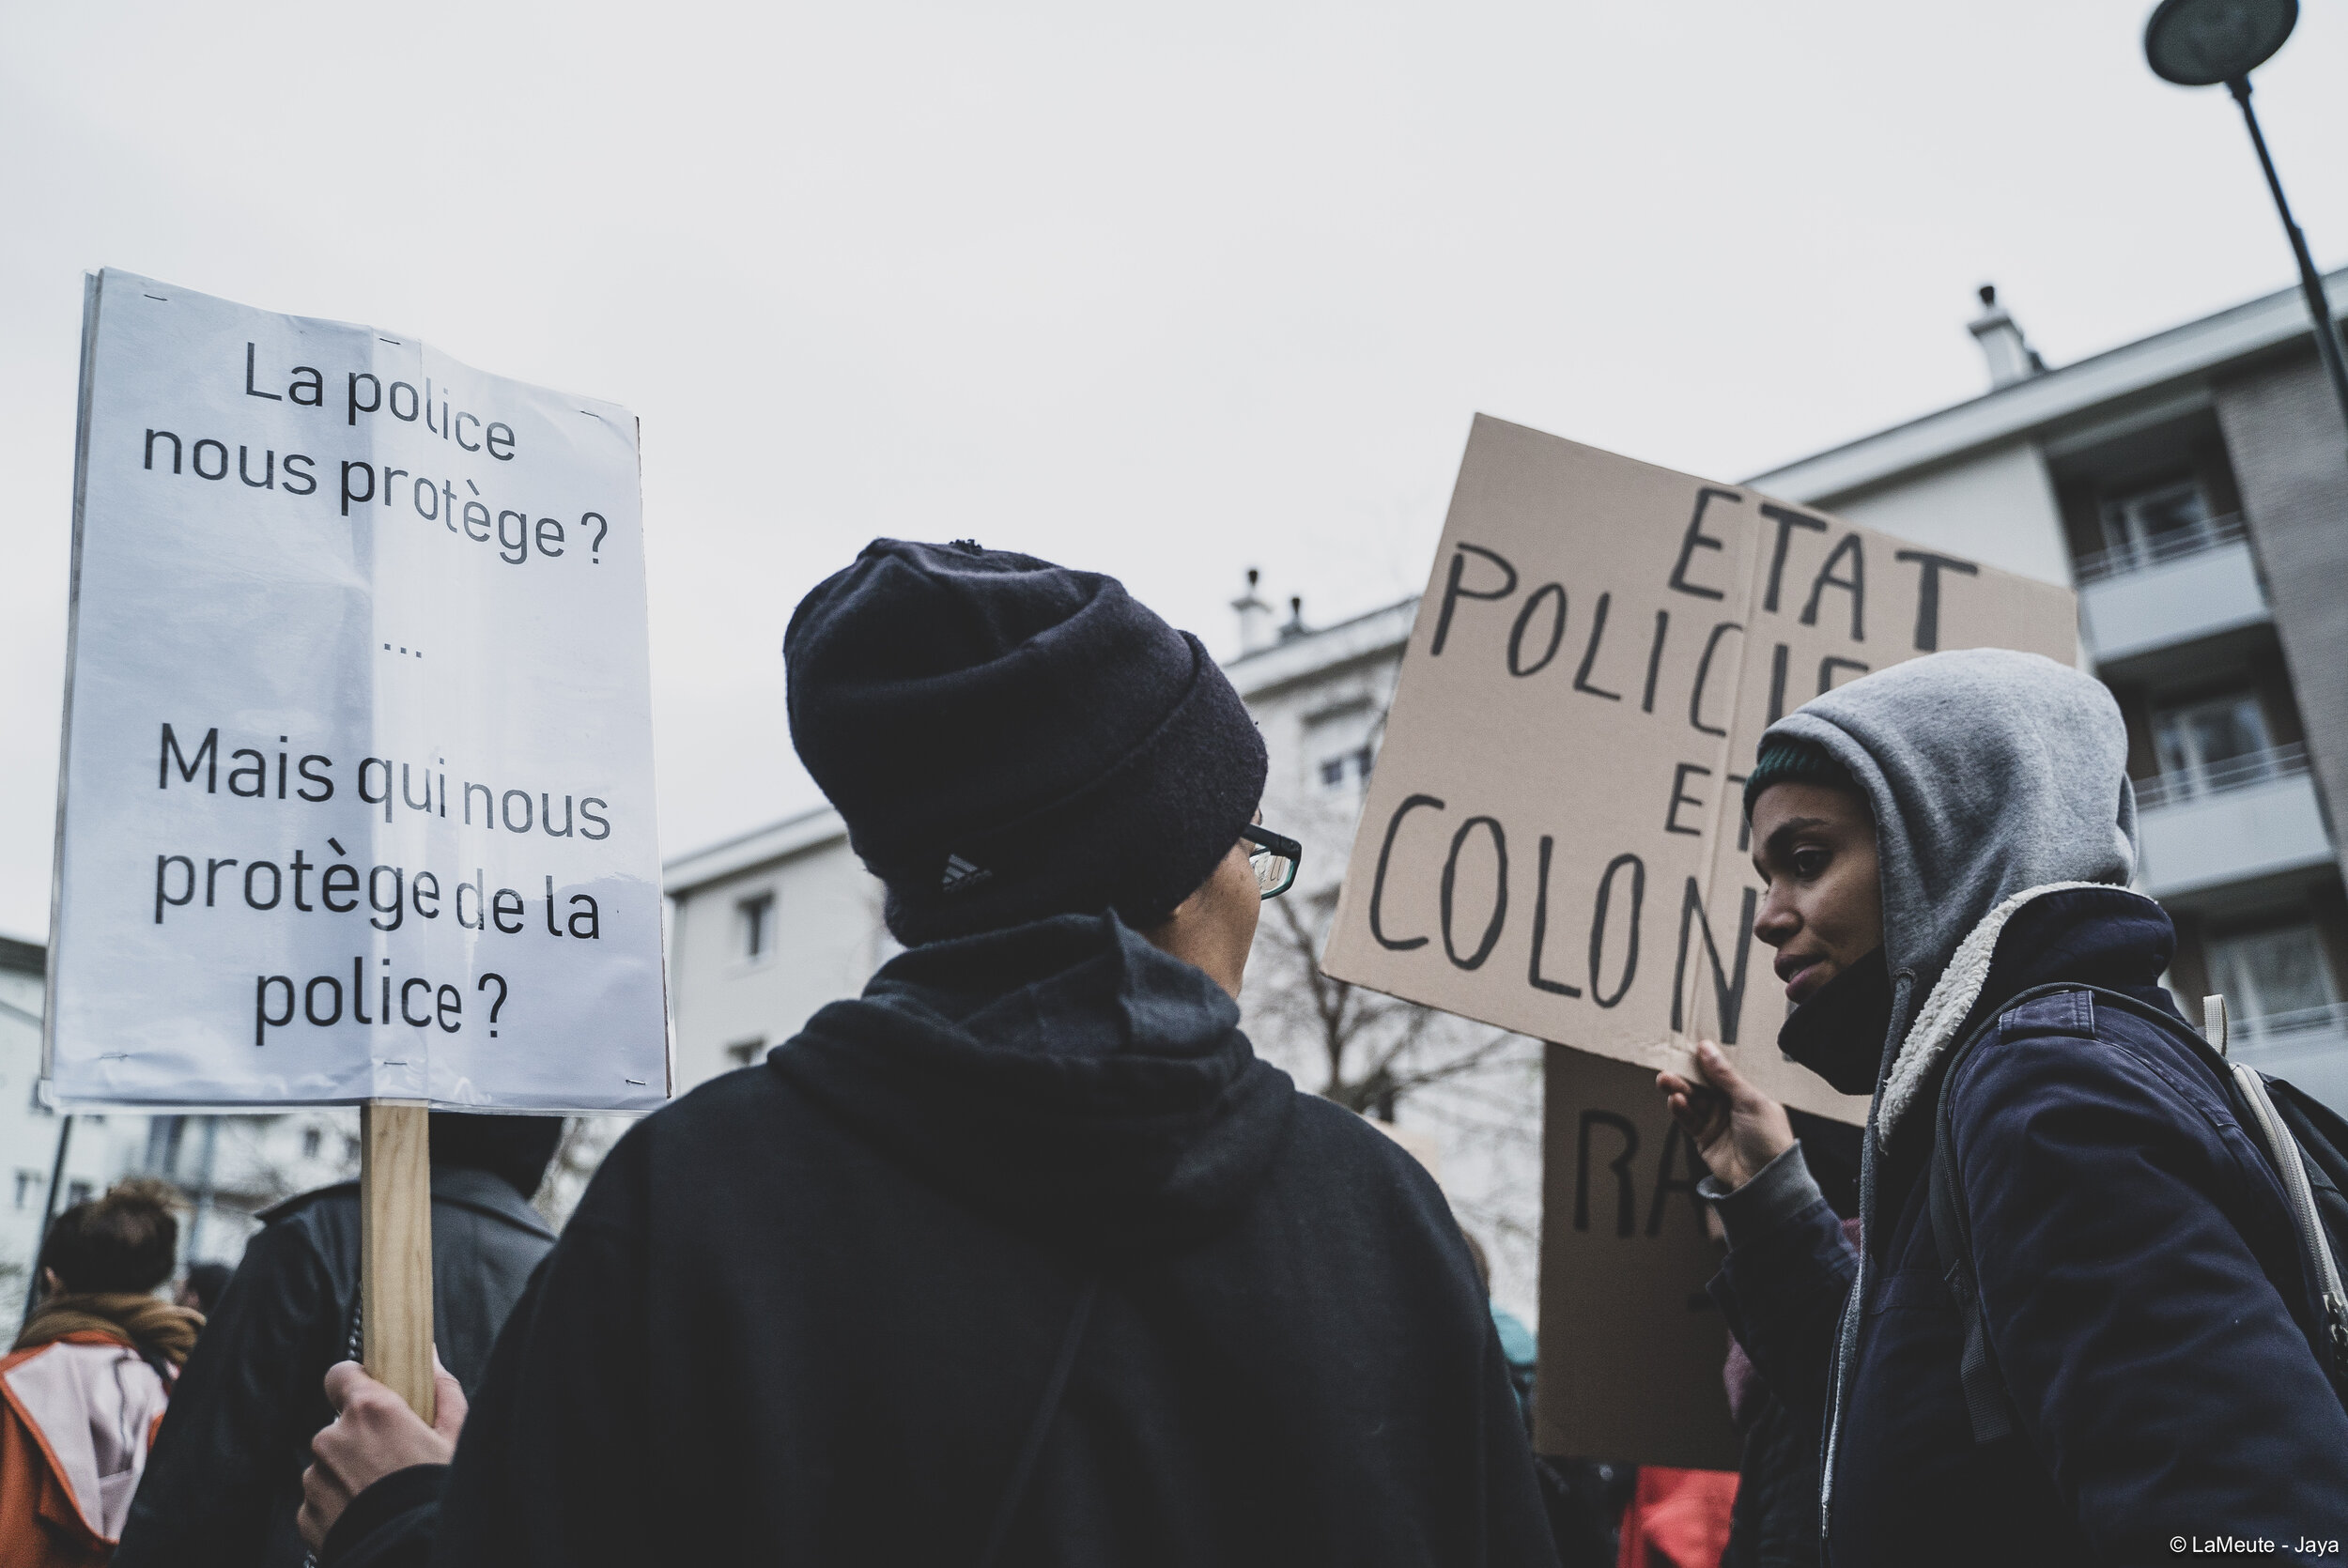   Toutes les prises de parole d’aujourd’hui pointent les dysfonctionnements du système judiciaire en France, l’impunité systématique des policiers dans les affaires de violences policières, et la généralisation accrue de ces violences.  ©LaMeute - Ja